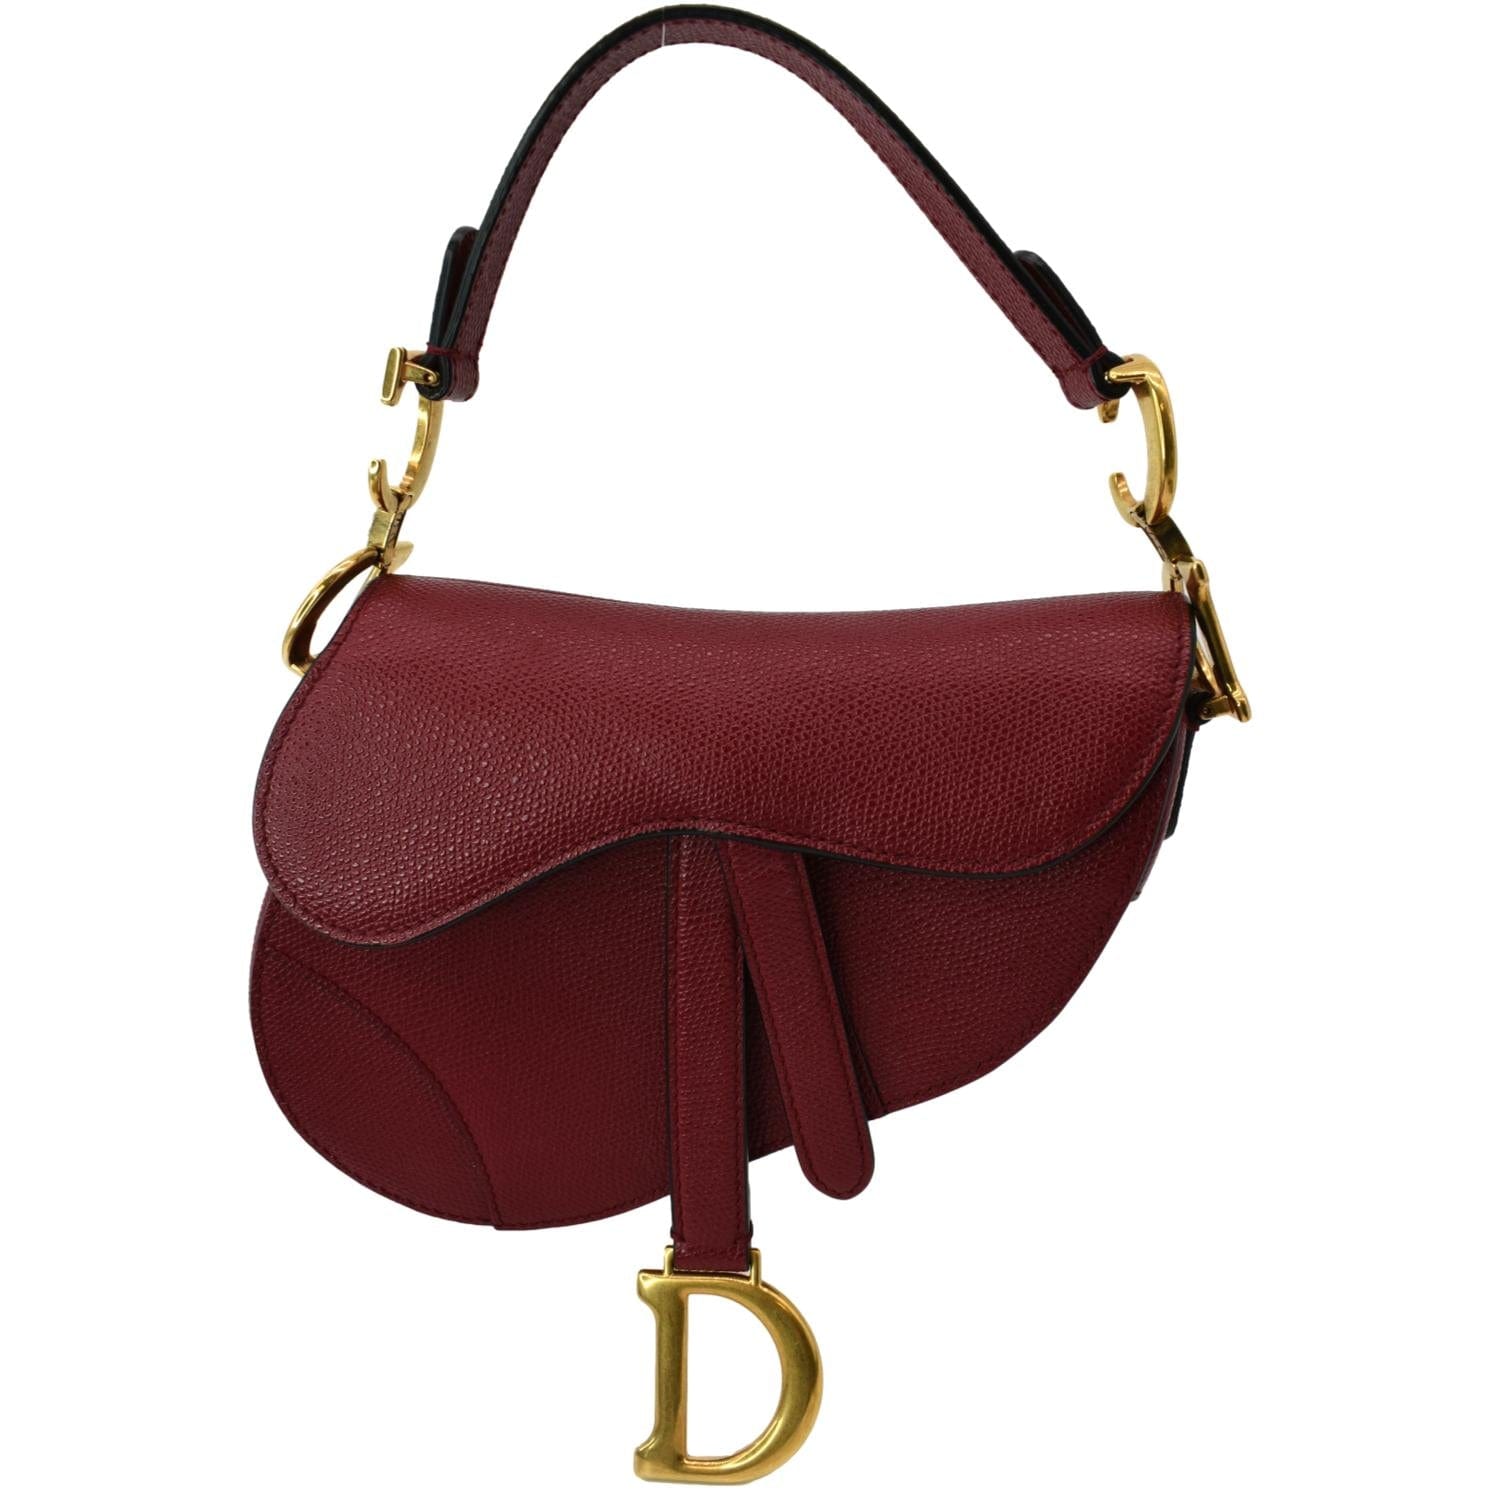 Where to buy a Dior Saddle bag